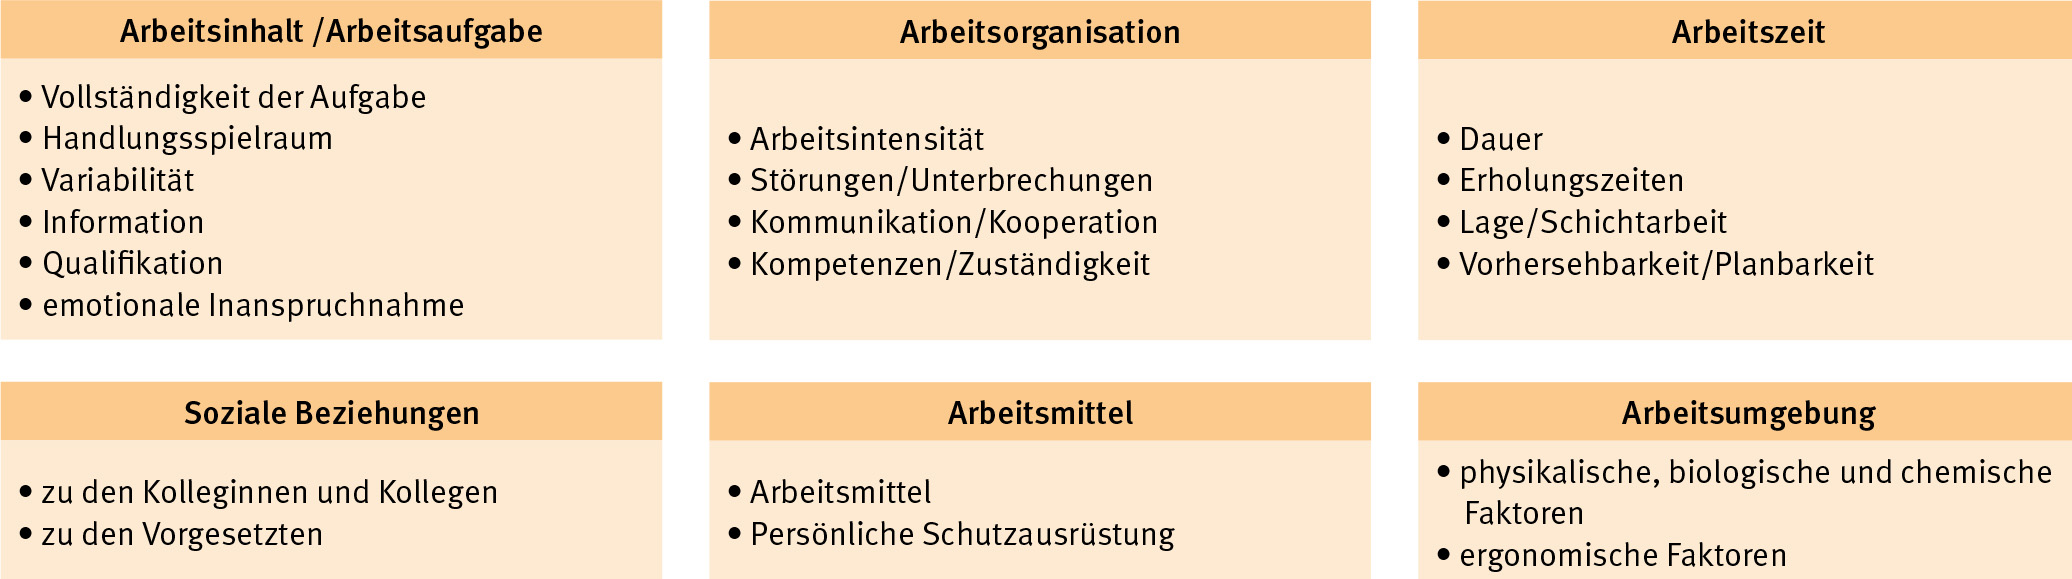 Quelle: „Leitlinie Beratung und Überwachung bei psychischer Belastung am Arbeitsplatz“ der Gemeinsamen Deutschen Arbeitsschutzstrategie (GDA)